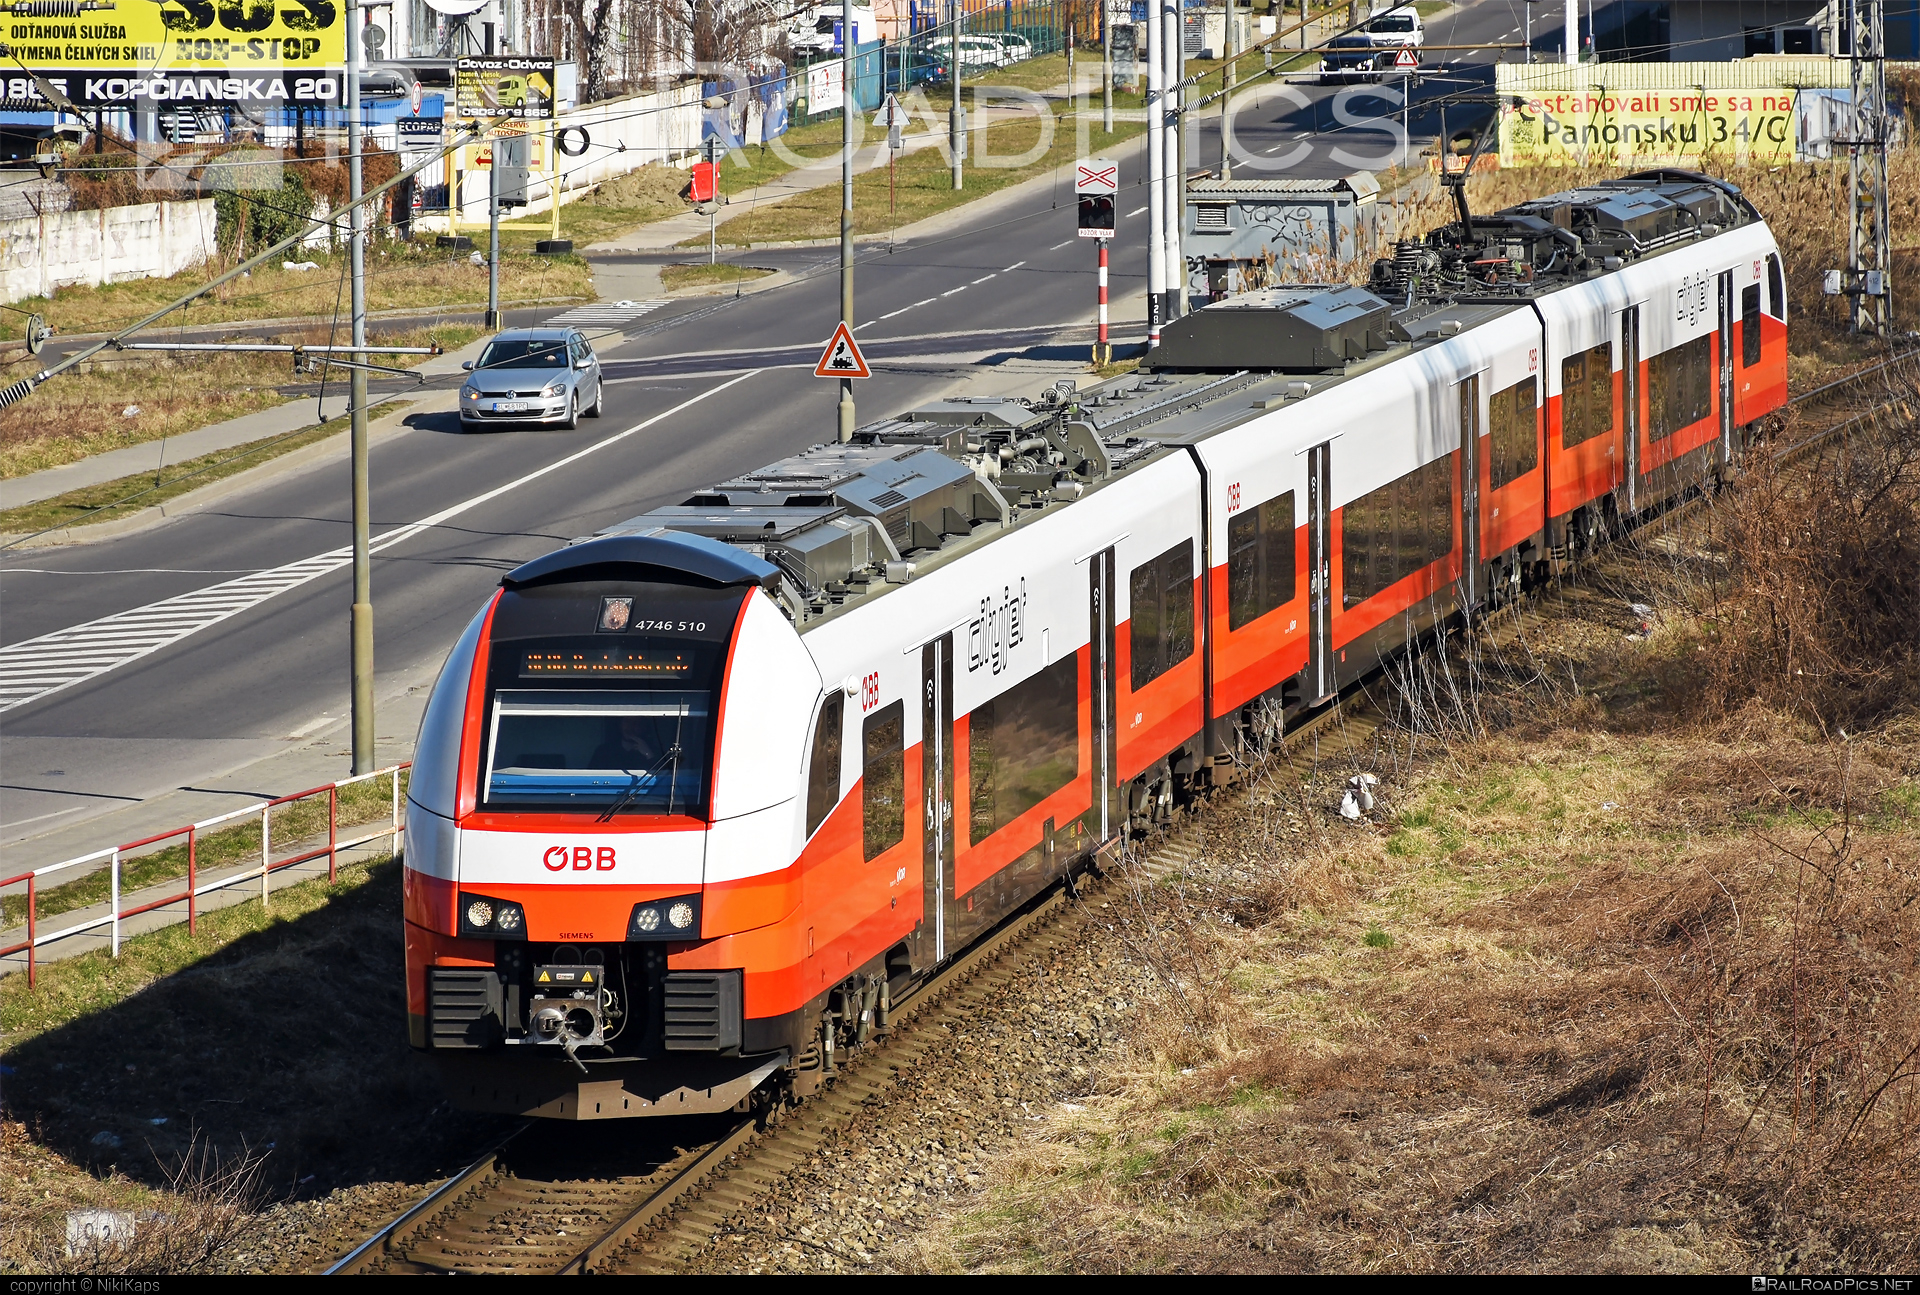 Siemens Desiro ML - 4746 510 operated by Österreichische Bundesbahnen #cityjet #desiro #desiroml #obb #obbcityjet #osterreichischebundesbahnen #siemens #siemensdesiro #siemensdesiroml